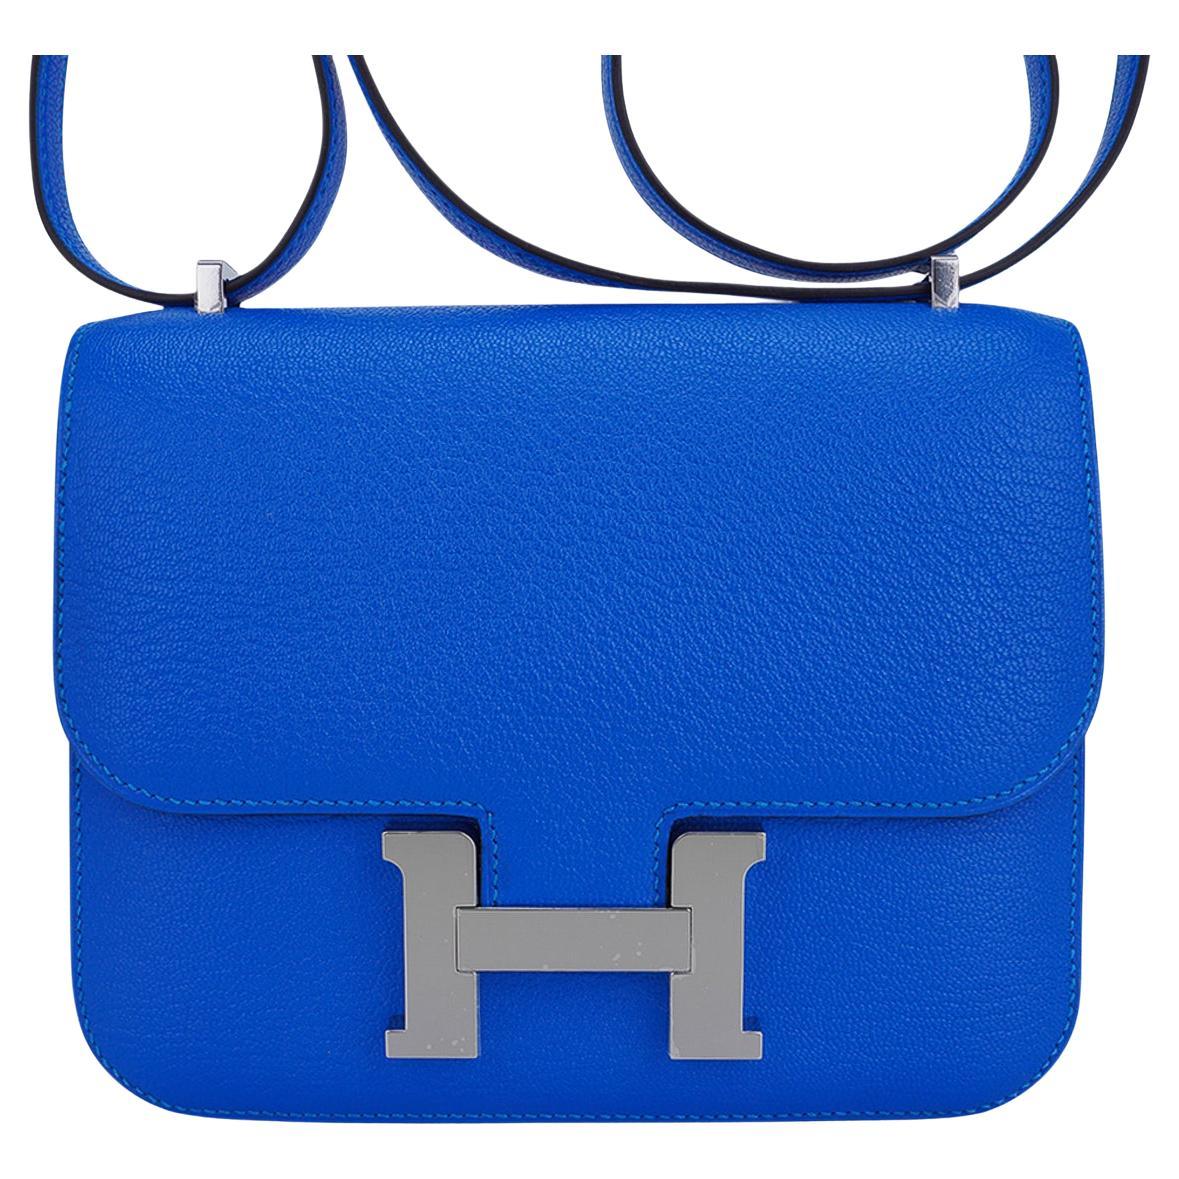 Hermes Constance 18 Verso Bleu Hydra / Deep Bleu Chevre Palladium Hardware For Sale